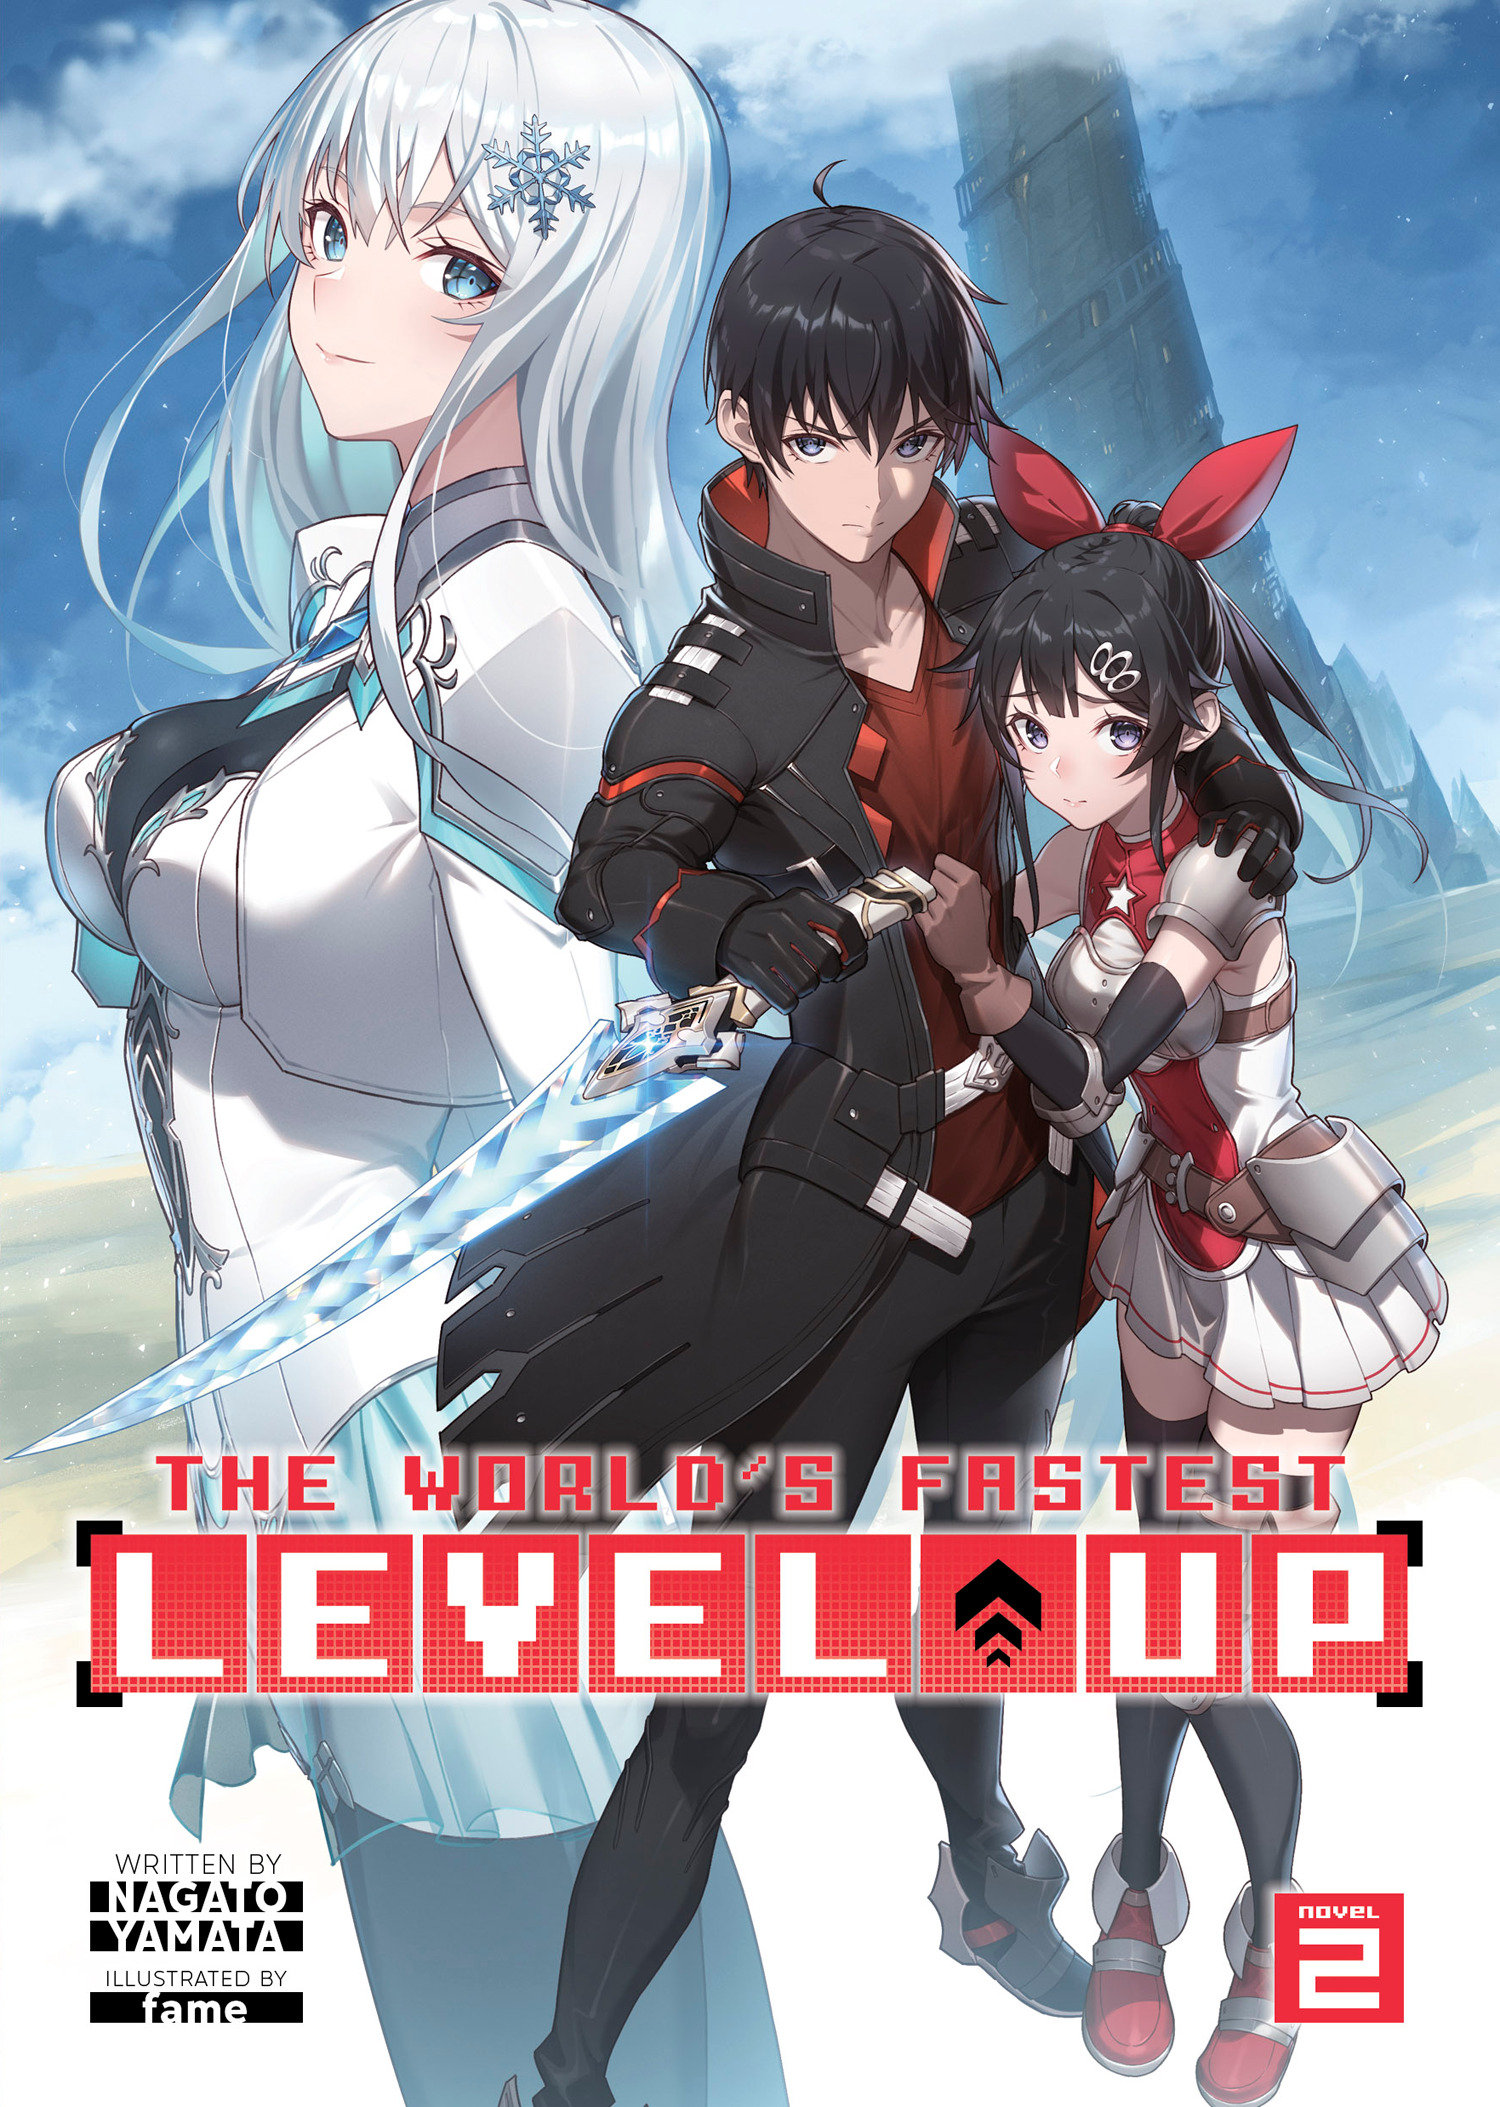 World's Fastest Level Up! Light Novel Volume 2